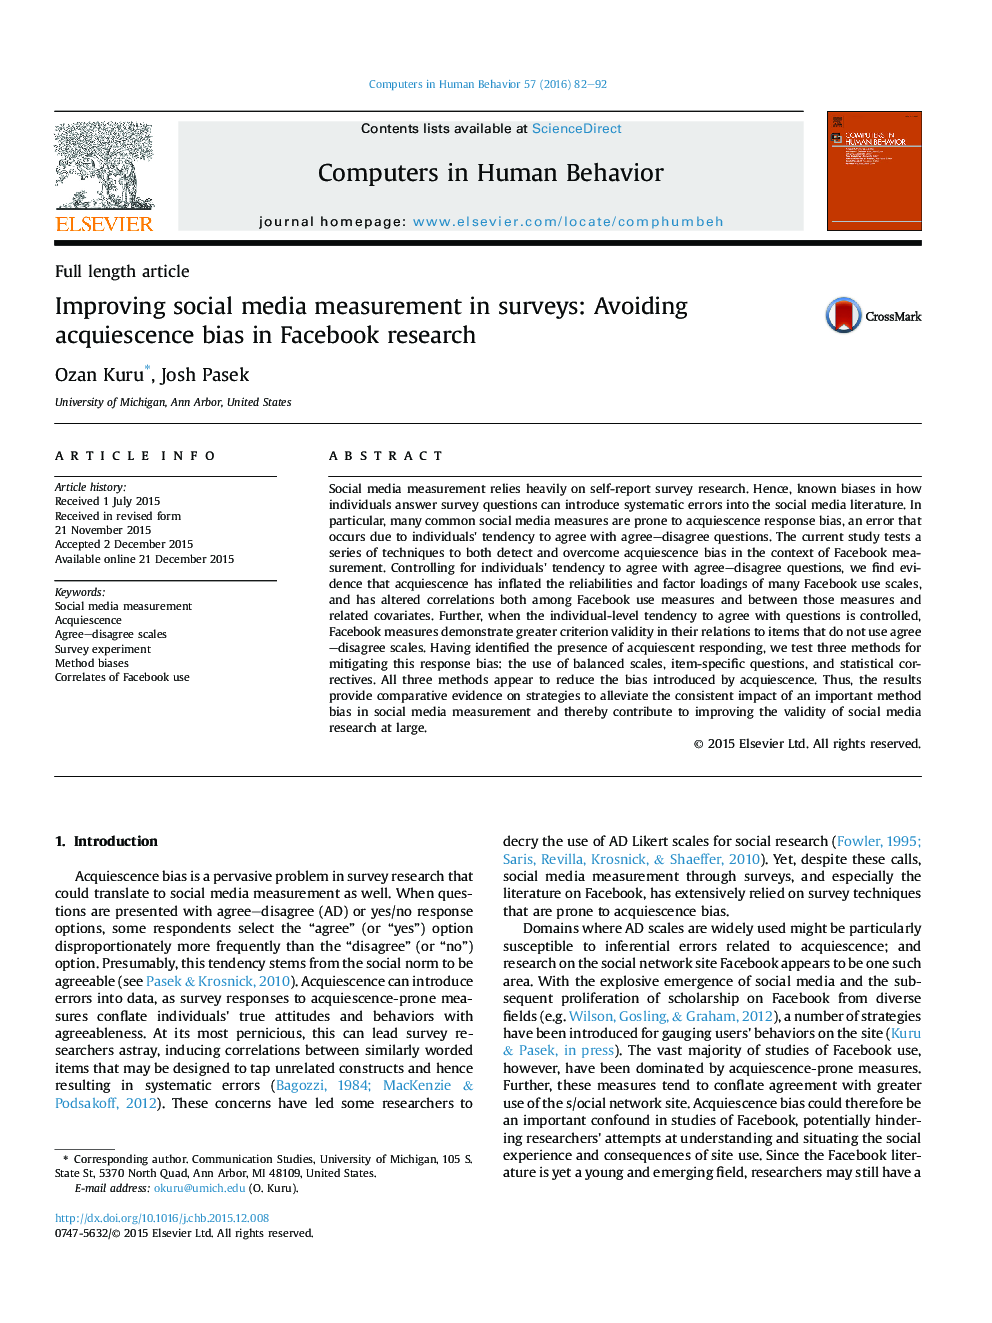 بهبود اندازه گیری رسانه های اجتماعی در نظر سنجی: اجتناب از سوگیری رضایت در تحقیقات فیس بوک